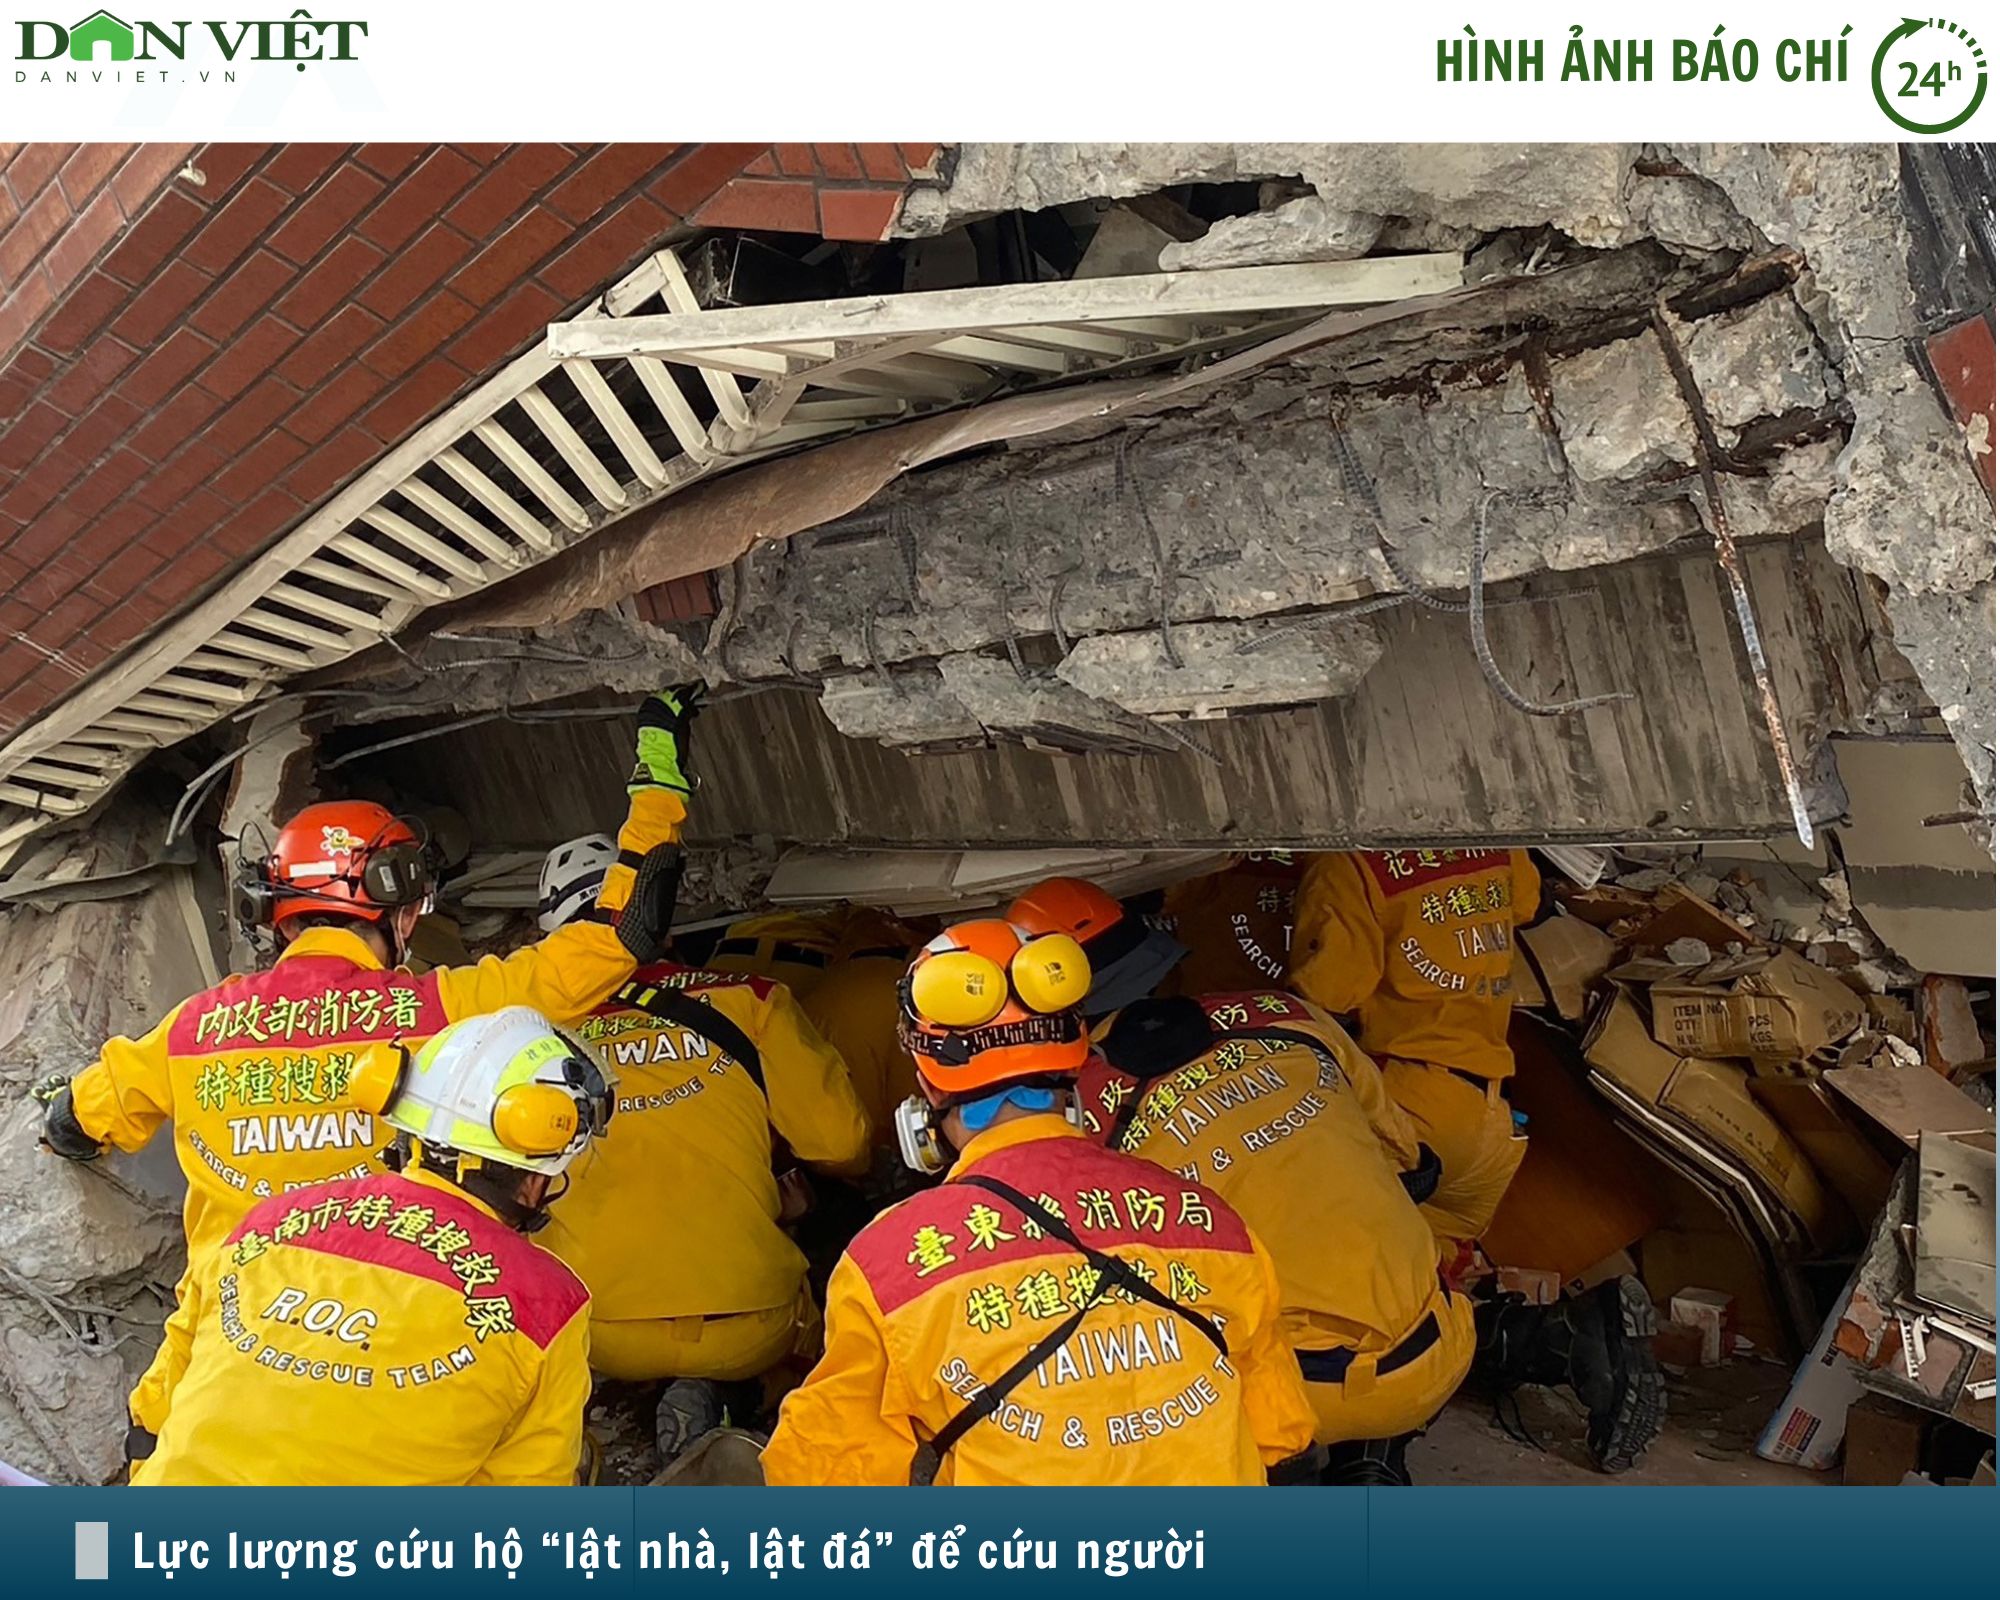 Hình ảnh báo chí 24h: Lực lượng cứu hộ "lật từng viên gạch" cứu người sau vụ động đất tại Đài Loan- Ảnh 1.